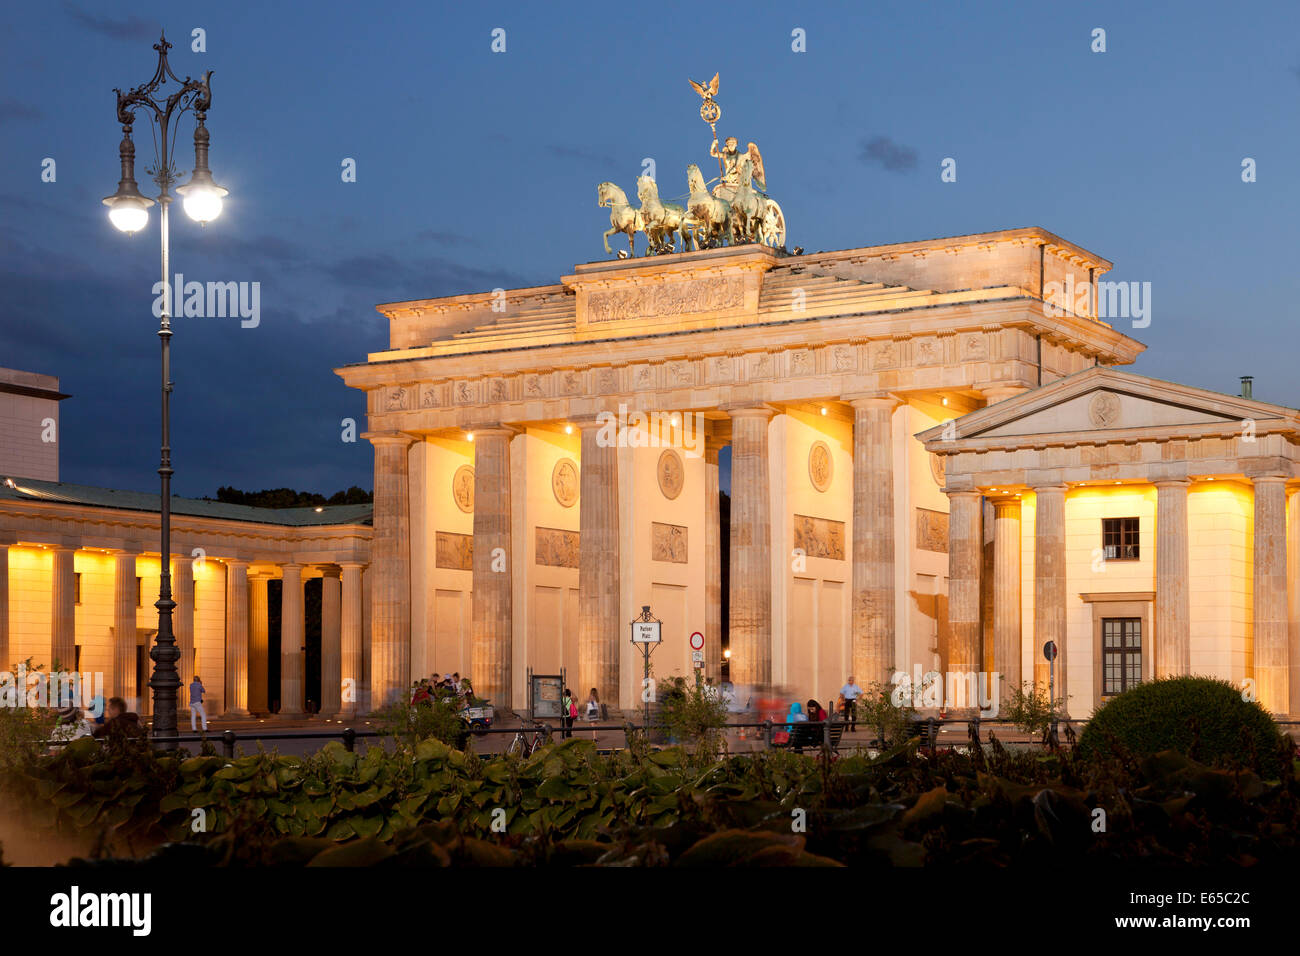 Gli illuminati dalla Porta di Brandeburgo e la piazza Pariser Platz a Berlino, Germania, Europa Foto Stock